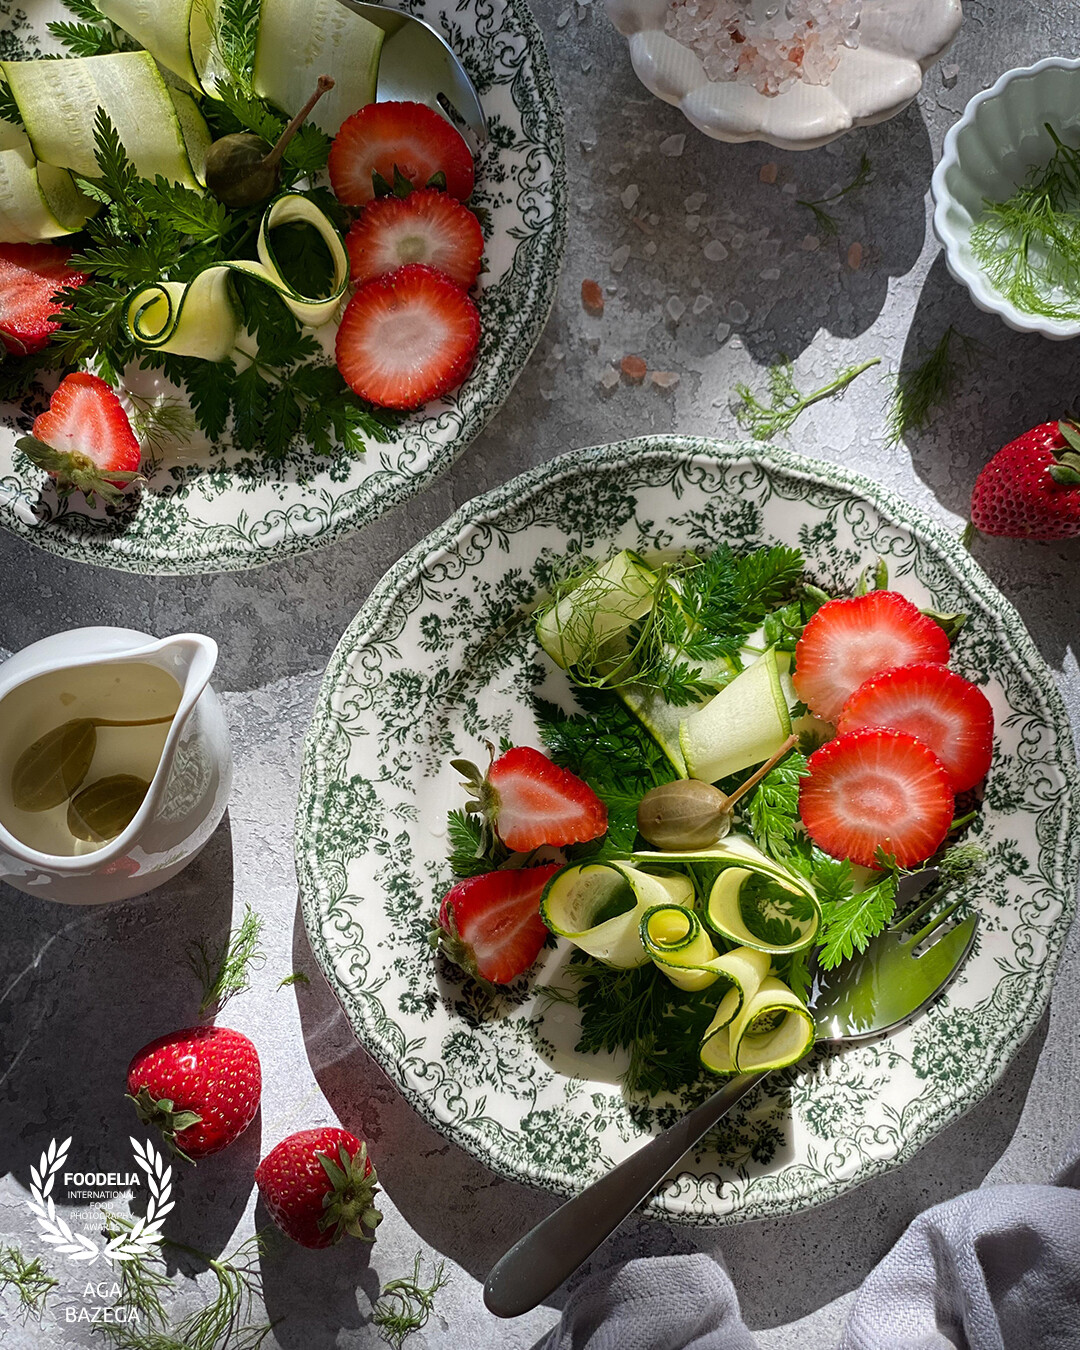 Vegetable fruit salad, captured with natural light.